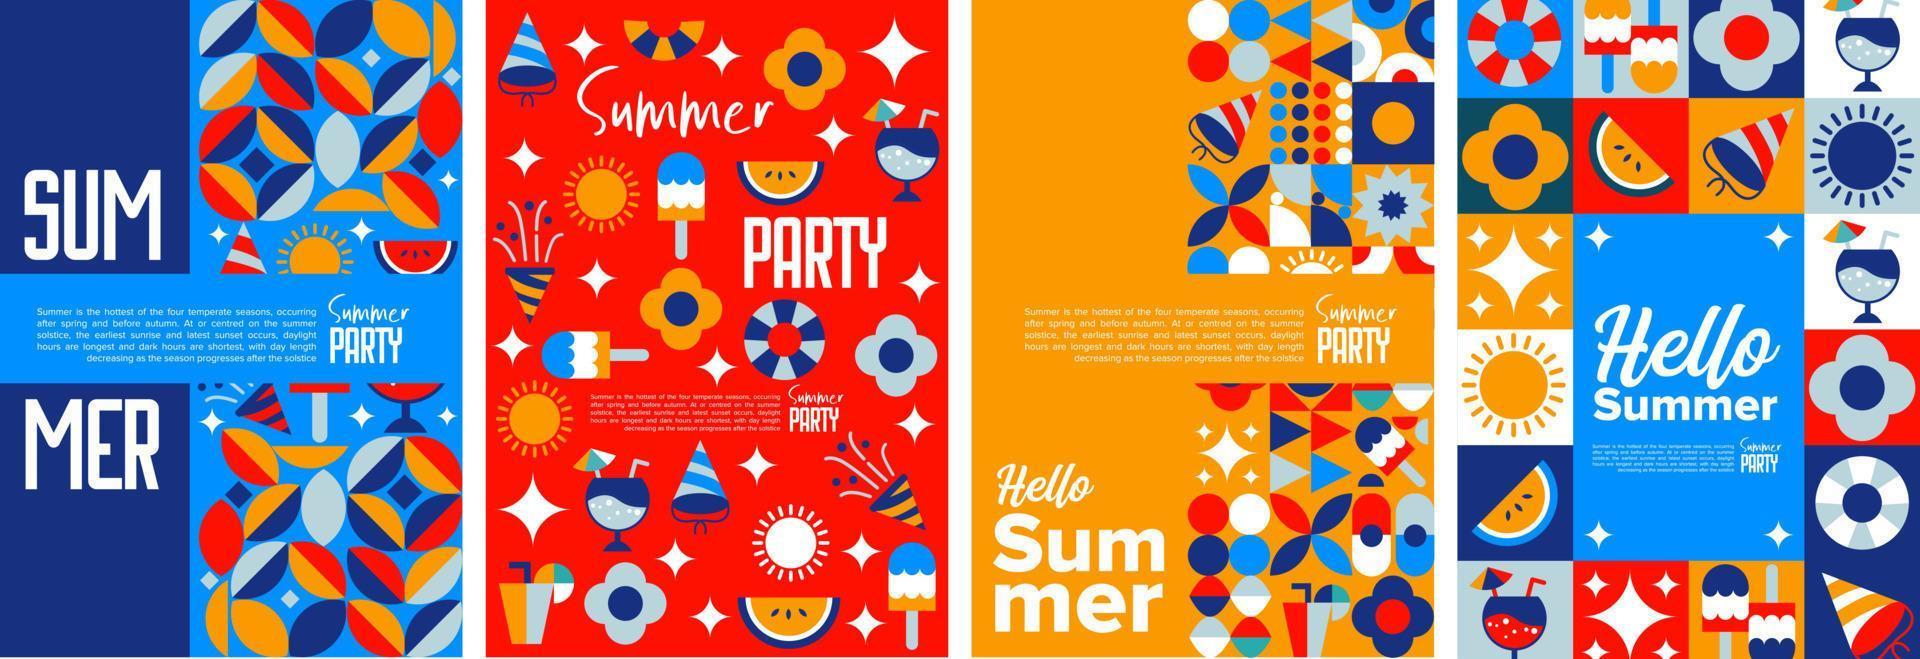 vakantie zomer poster sjabloon. abstracte flyer achtergrond zomer. creatieve boekomslag vectorillustratie vector